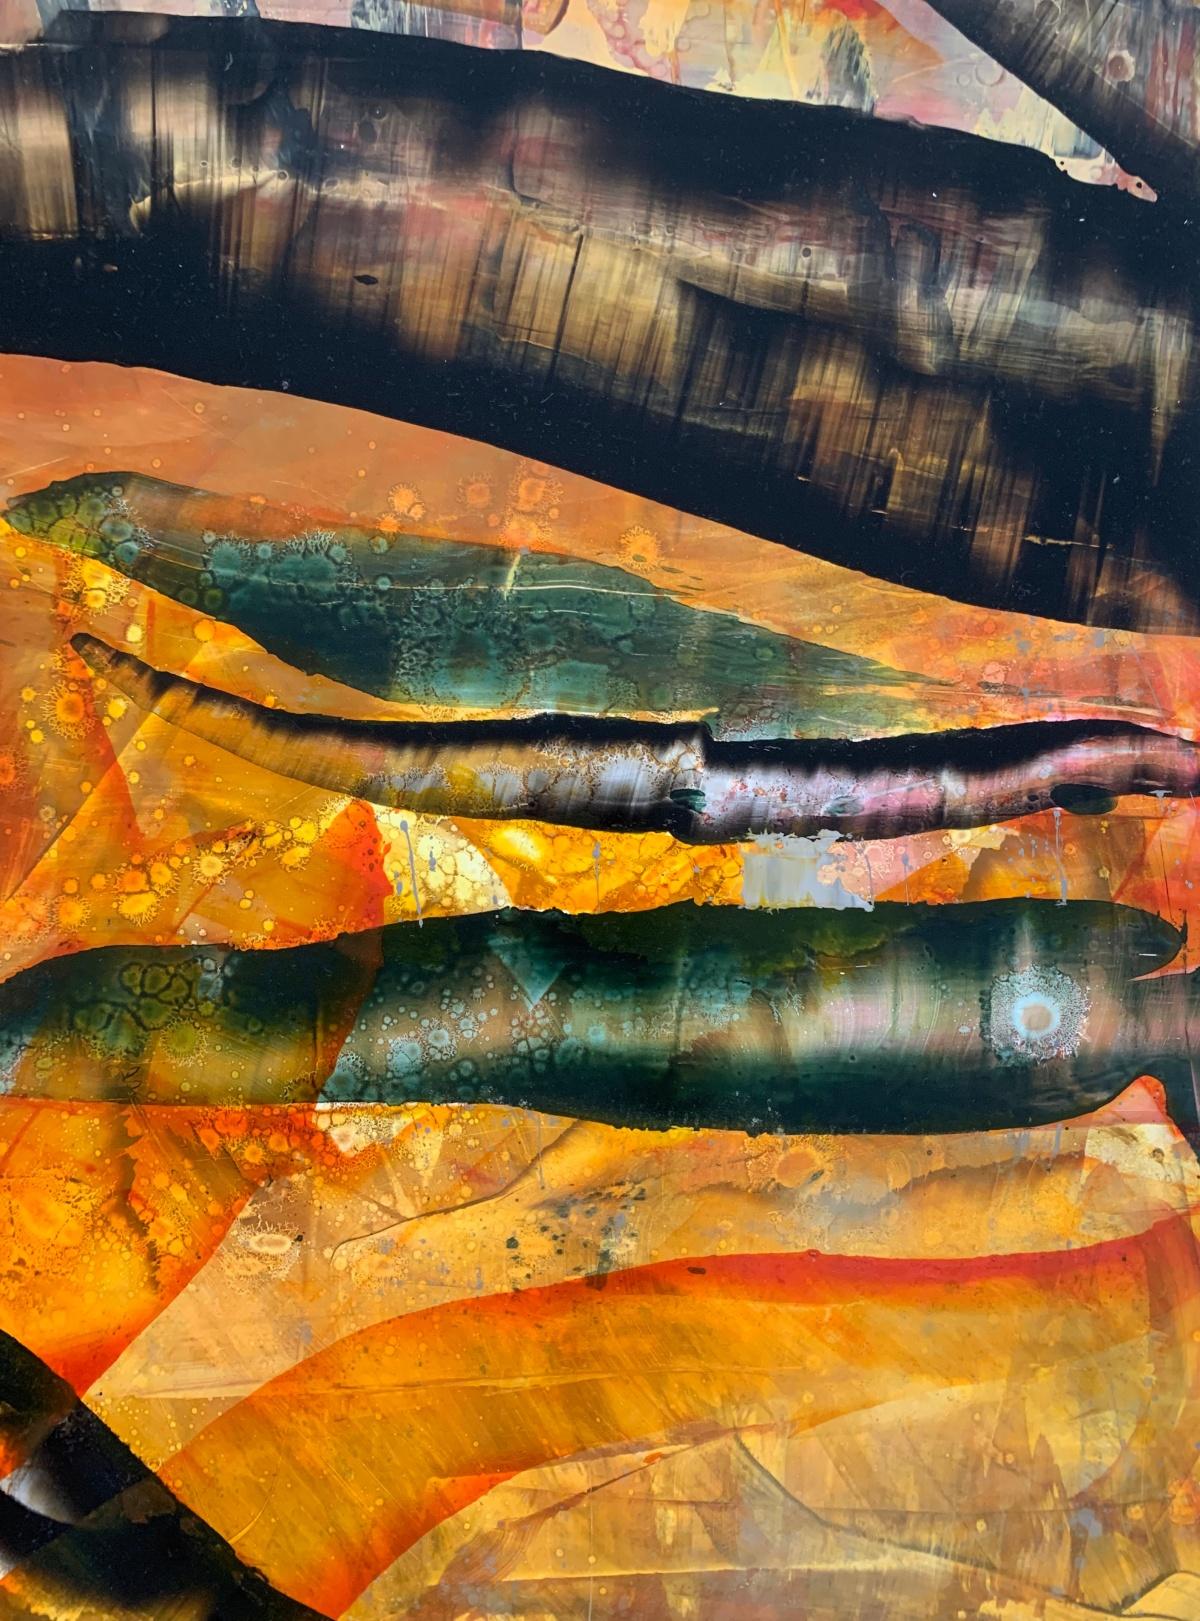 Abstraktes Gemälde in Öl auf hochschlagfestem Styrol von der in den USA lebenden polnischen Künstlerin Monika Rossa. Das Kunstwerk ist farbenfroh. Sie kann sowohl vertikal als auch horizontal ausgestellt werden.

MONIKA ROSSA 
studierte Malerei an